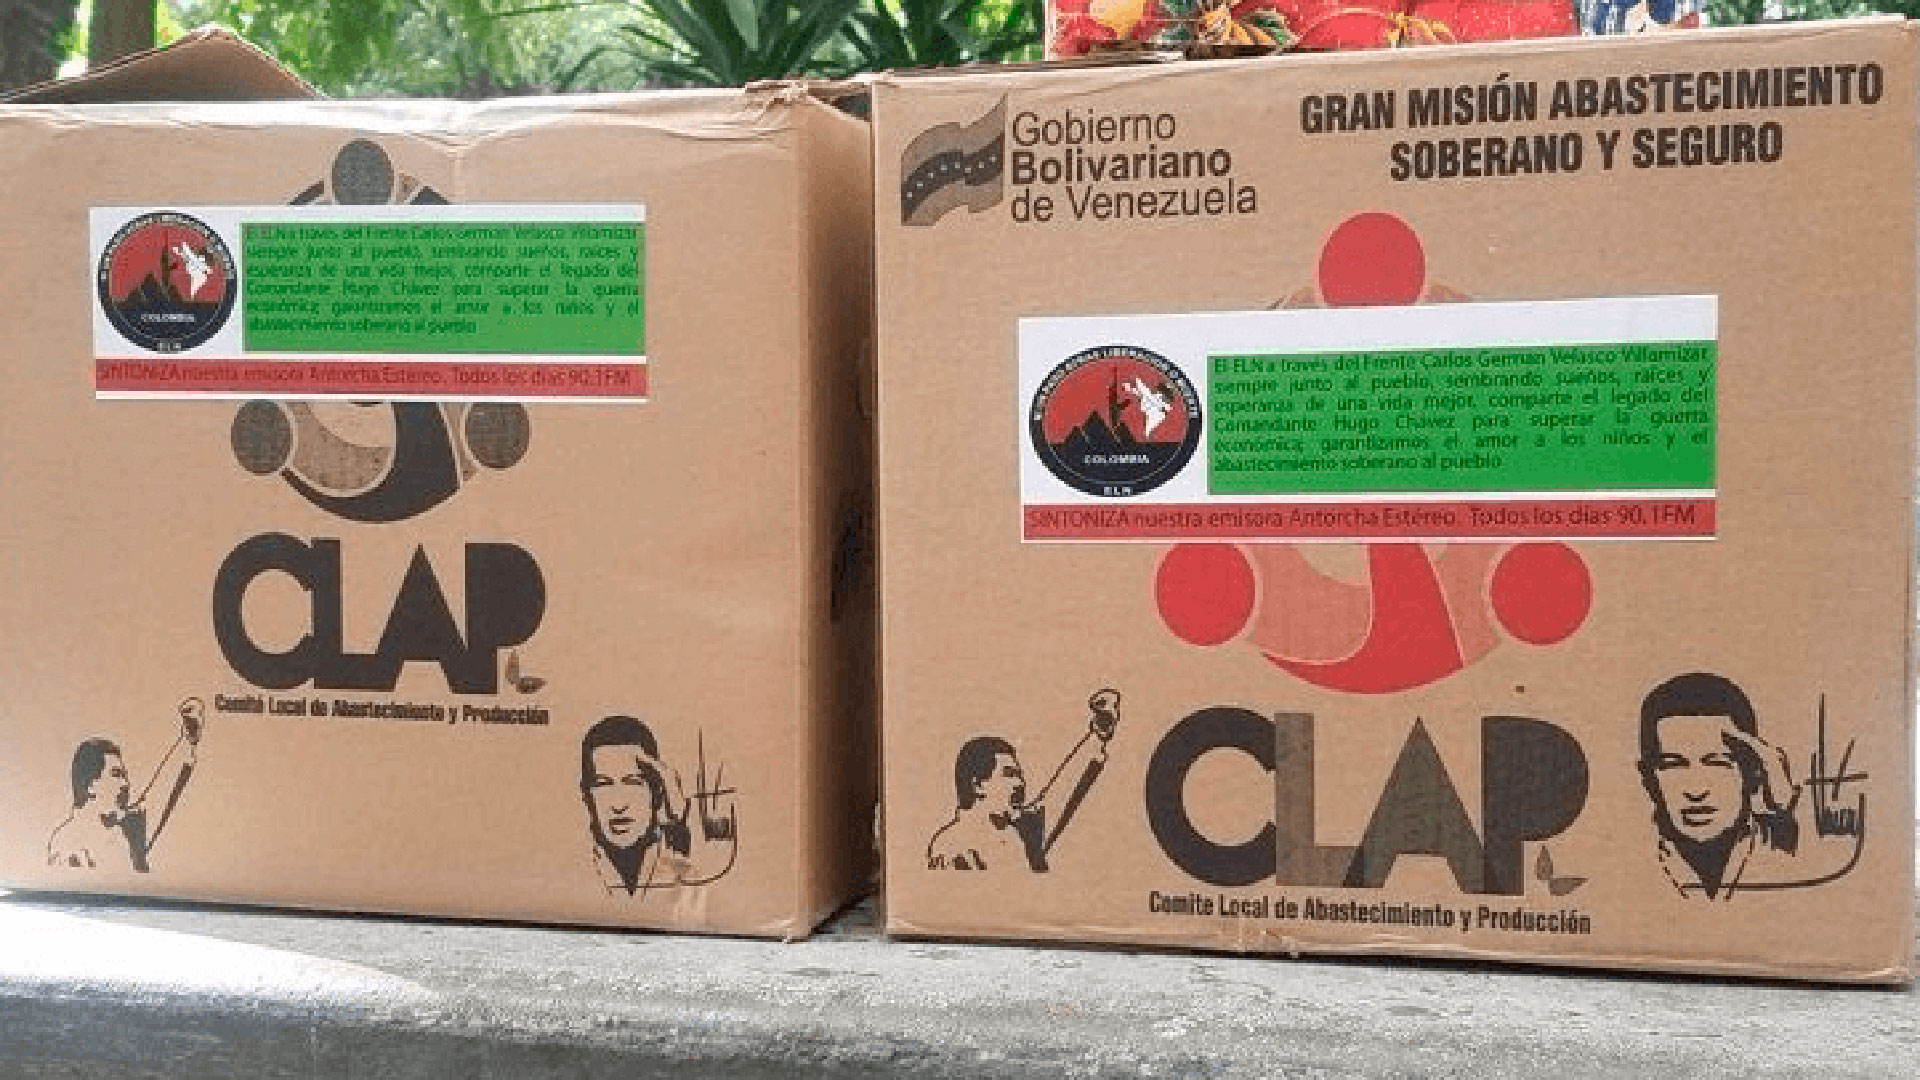 Cajas CLAP de alimentos que reparte el régimen de Maduro